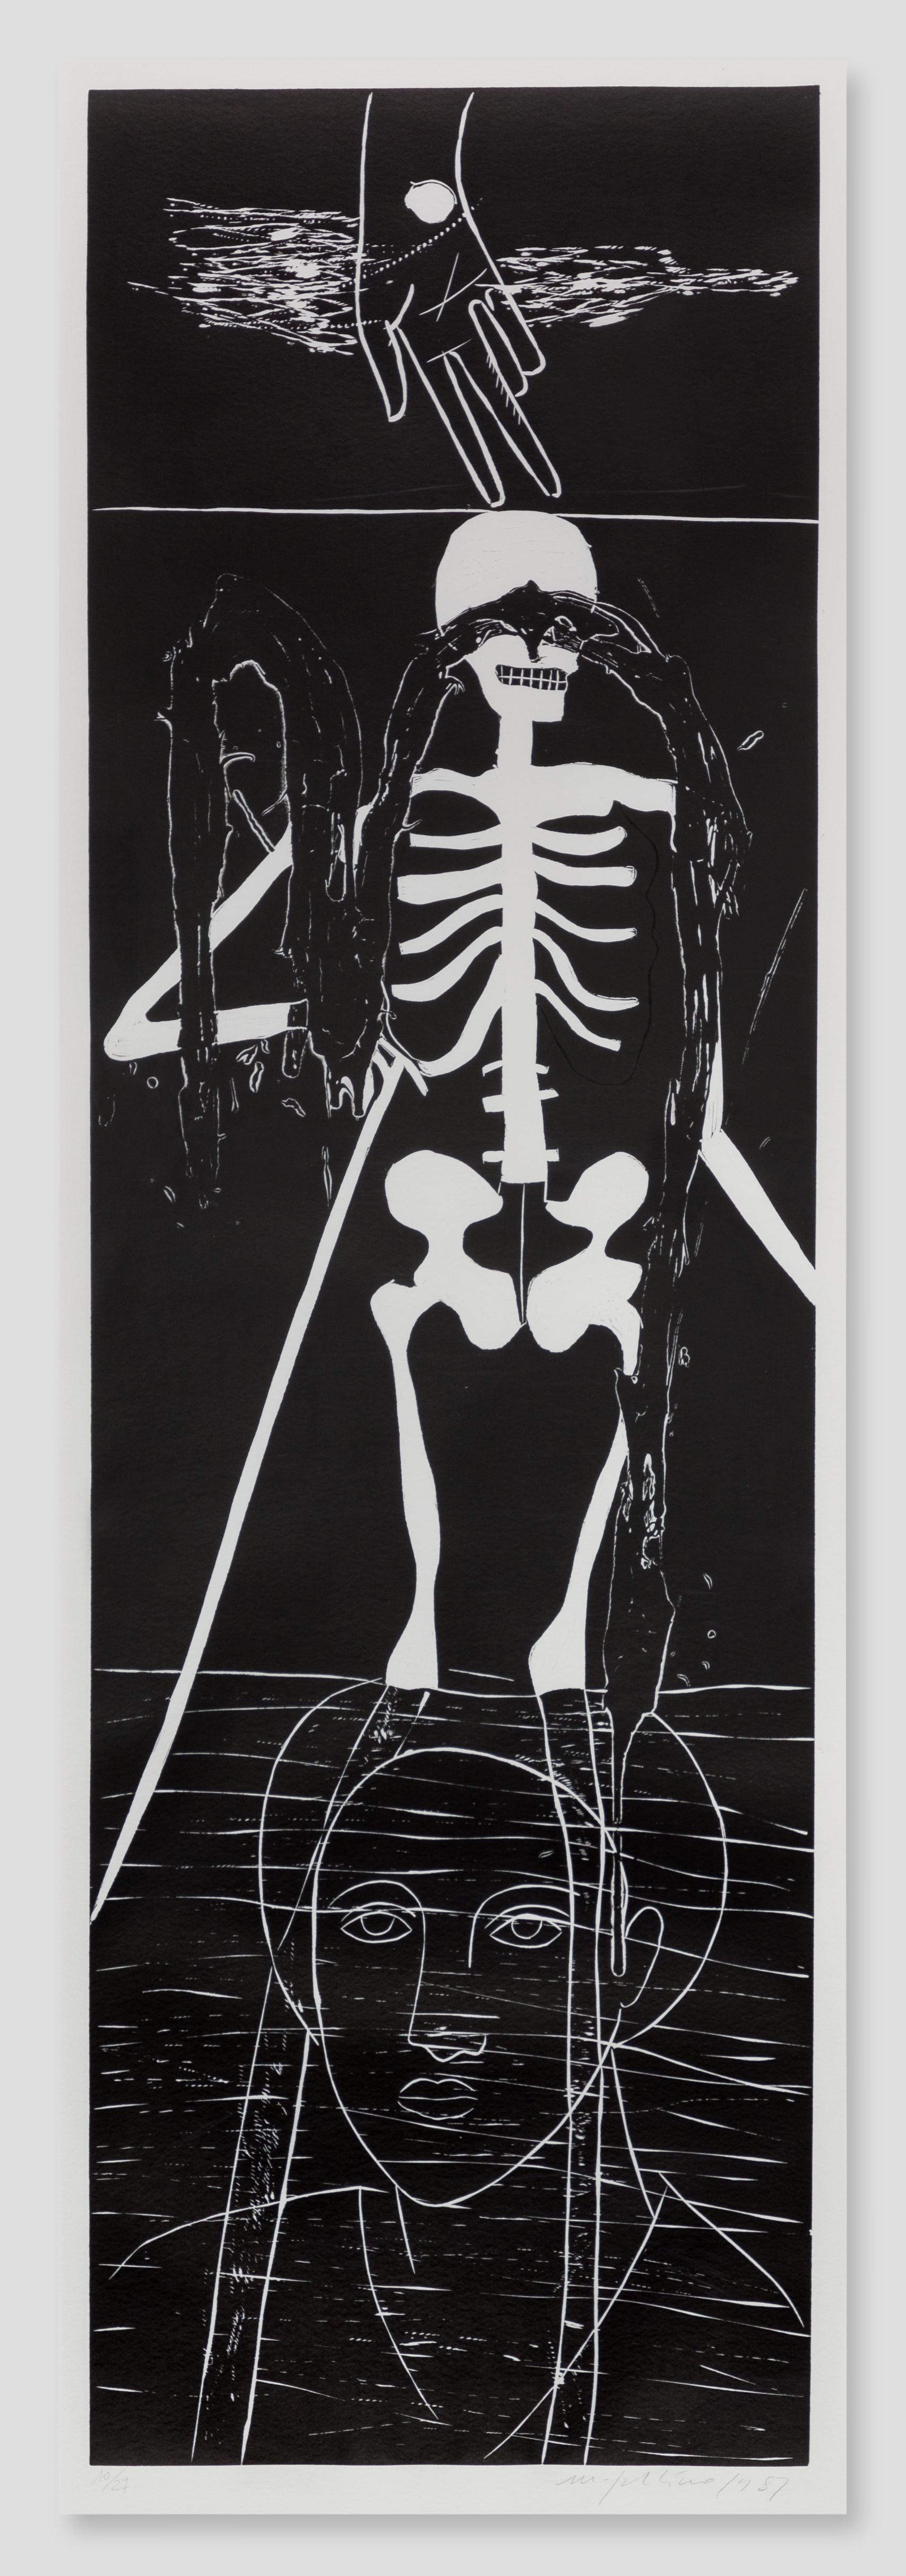 Atlantico VI (Skeleton) - Print by Mimmo Paladino